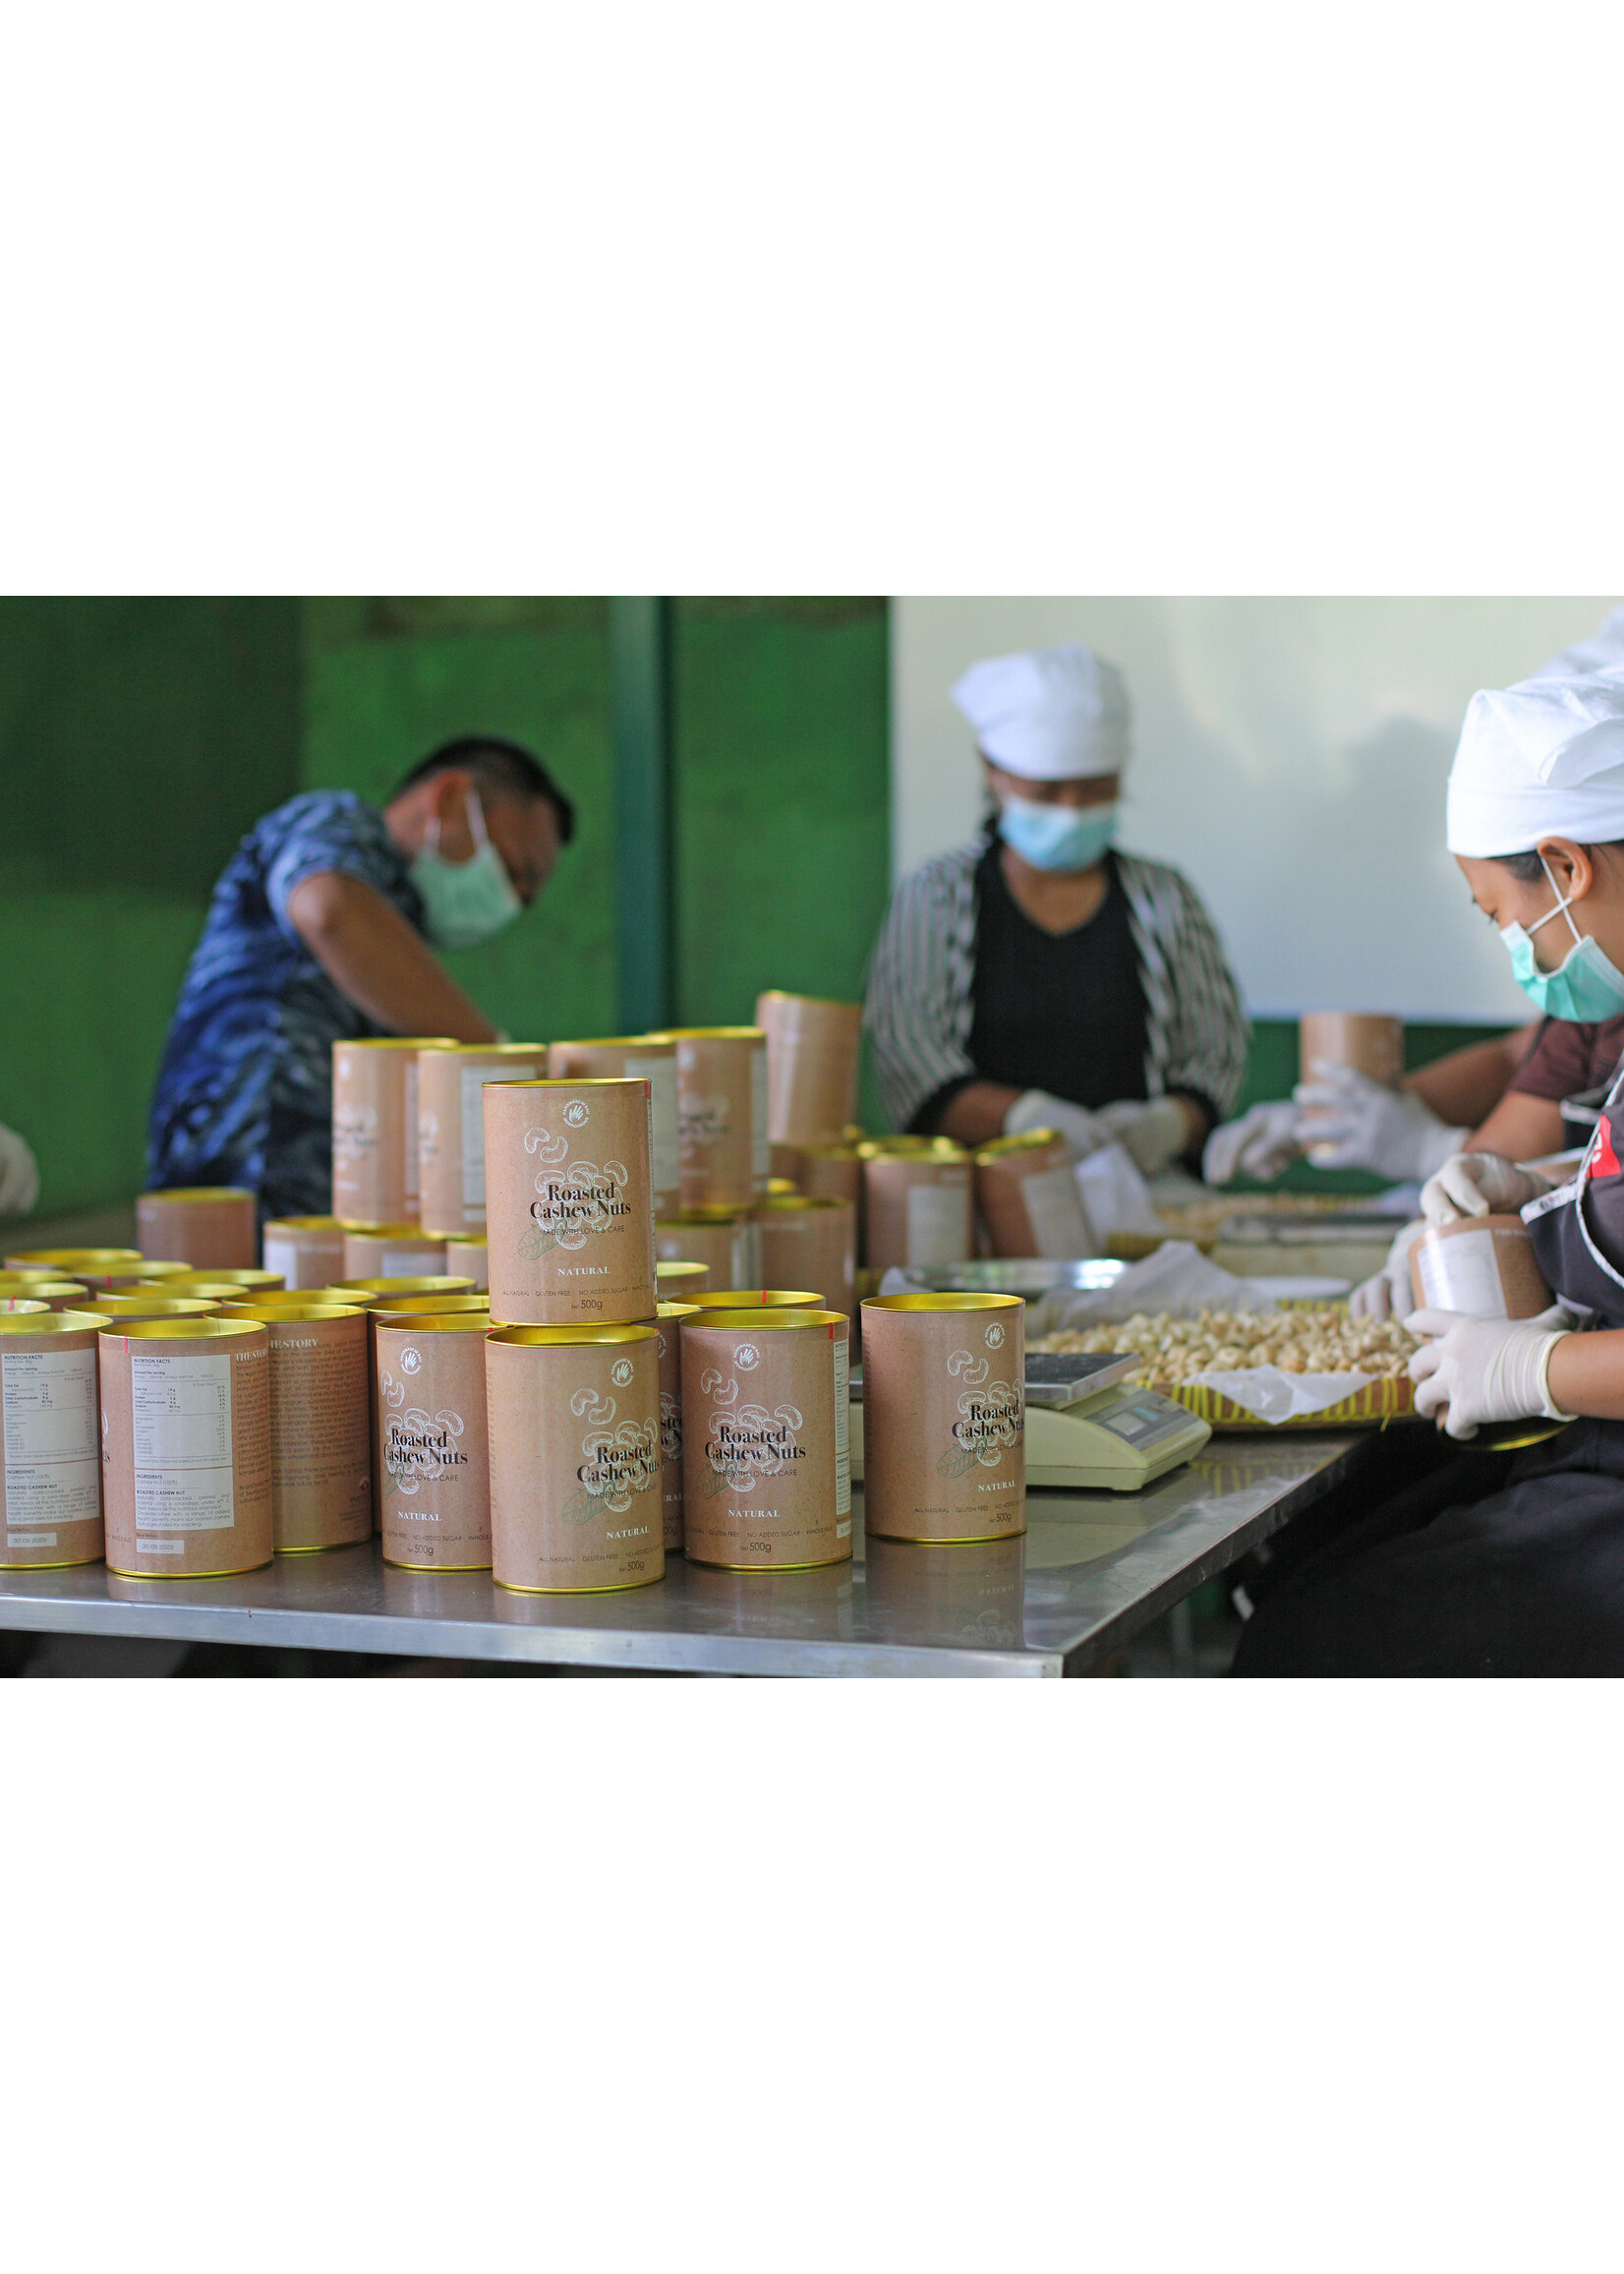 Muntigunung - Zukunft für Kinder Cashew Thay Herbal Mix 75 gr. Bali